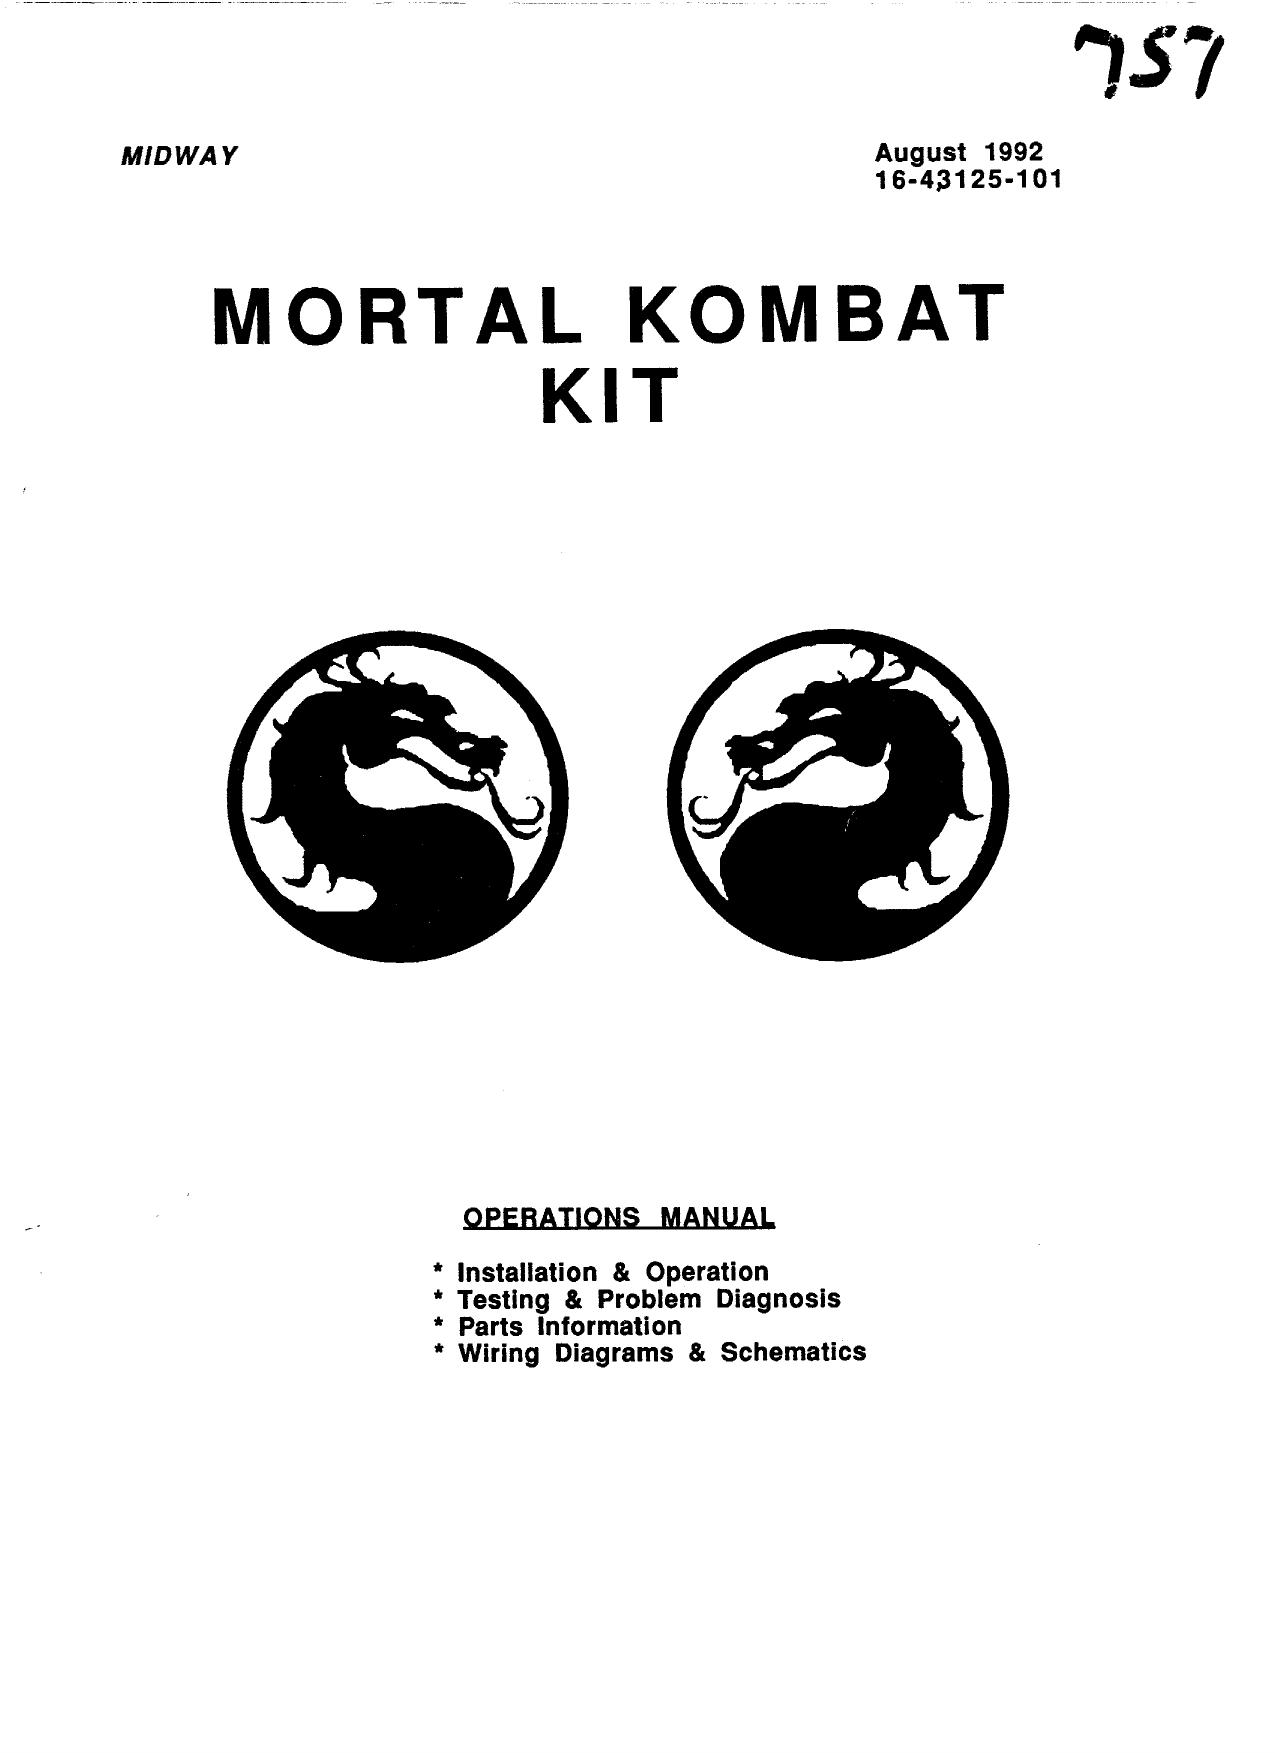 Mortal Kombat 1 Kit (16-43125-101 Aug 1992) (Bad Scan)